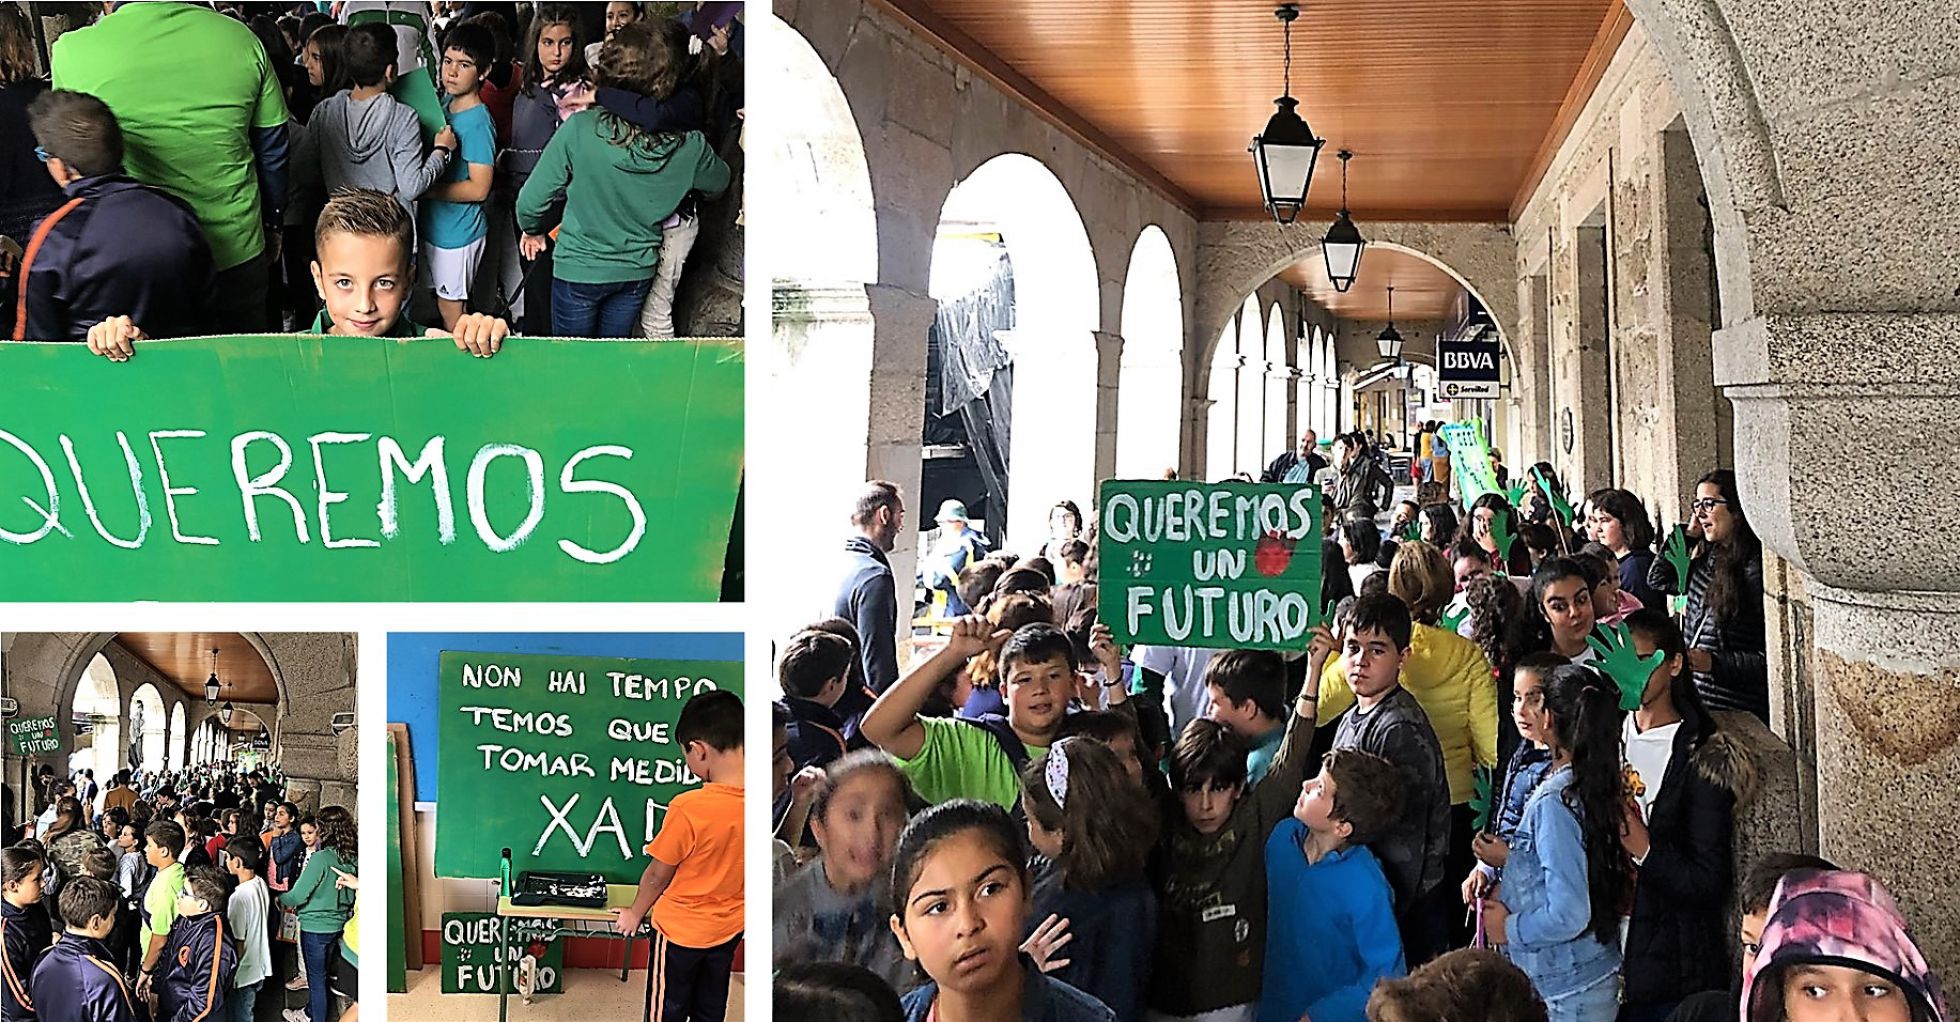 “Encuentro por el clima” delante de la plaza del Ayuntamiento de O Porriño, el viernes 27 de septiembre de 2019 |
MIRIAM LEIRÓS